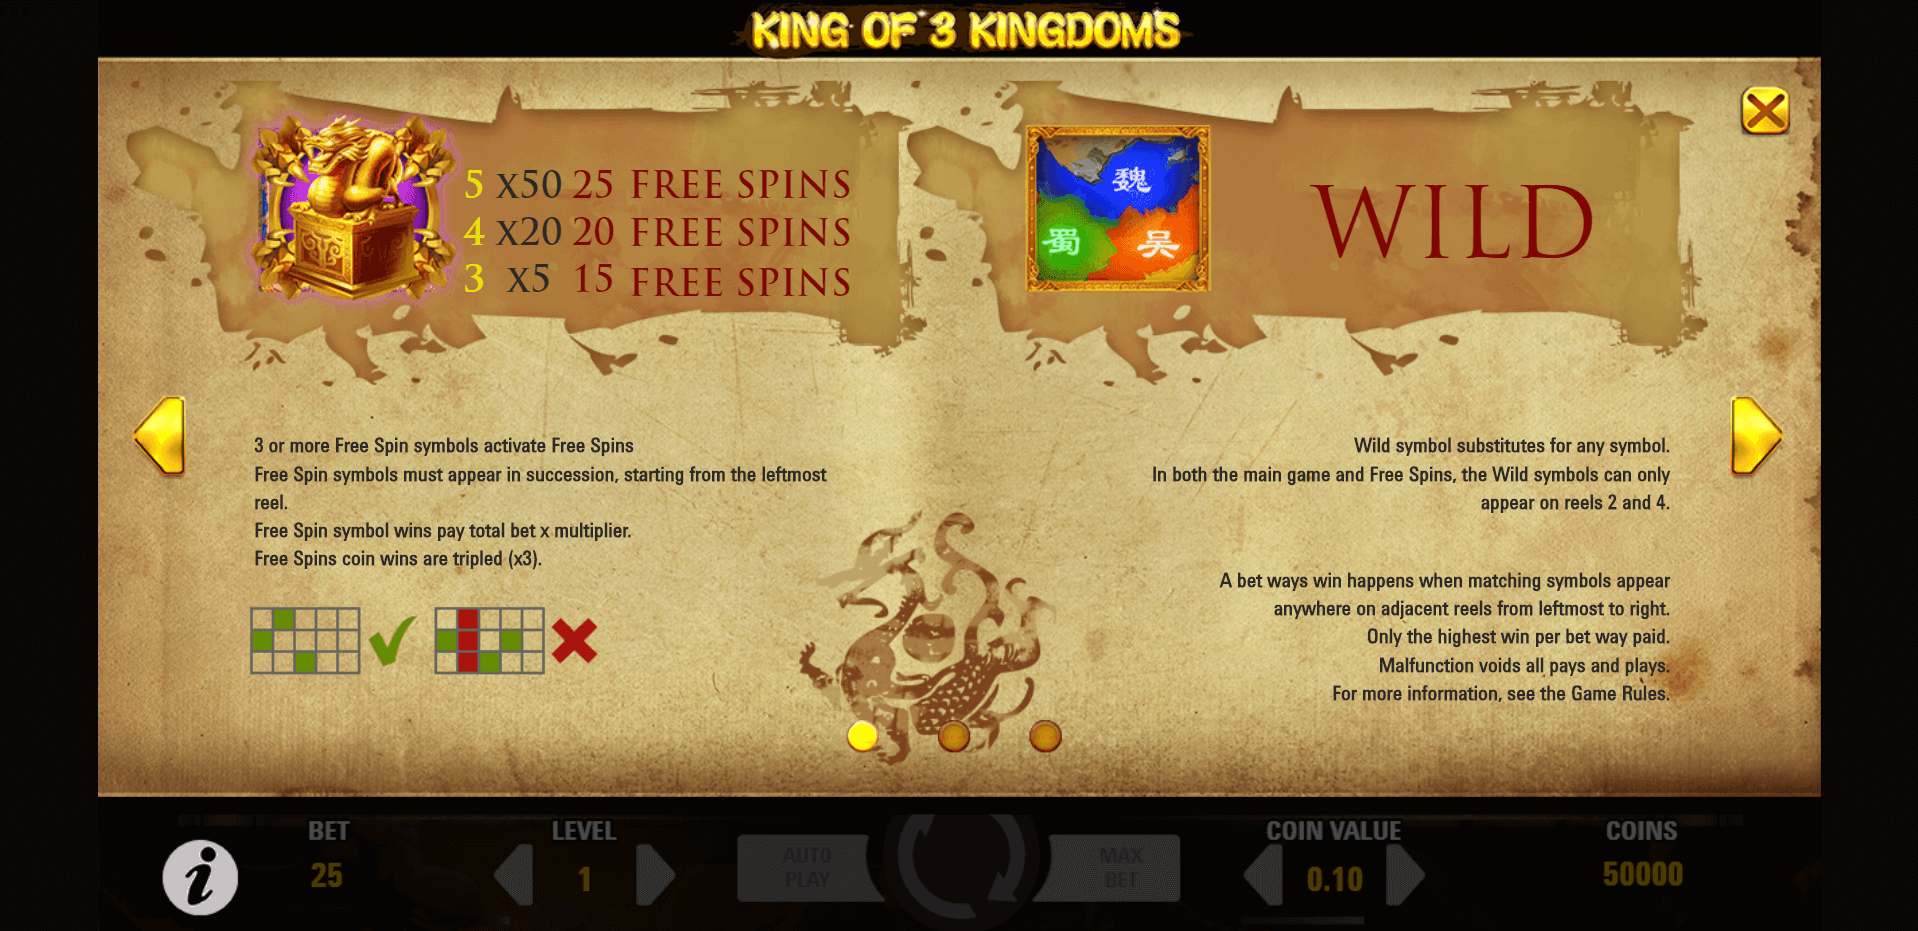 king of 3 kingdoms slot machine detail image 0